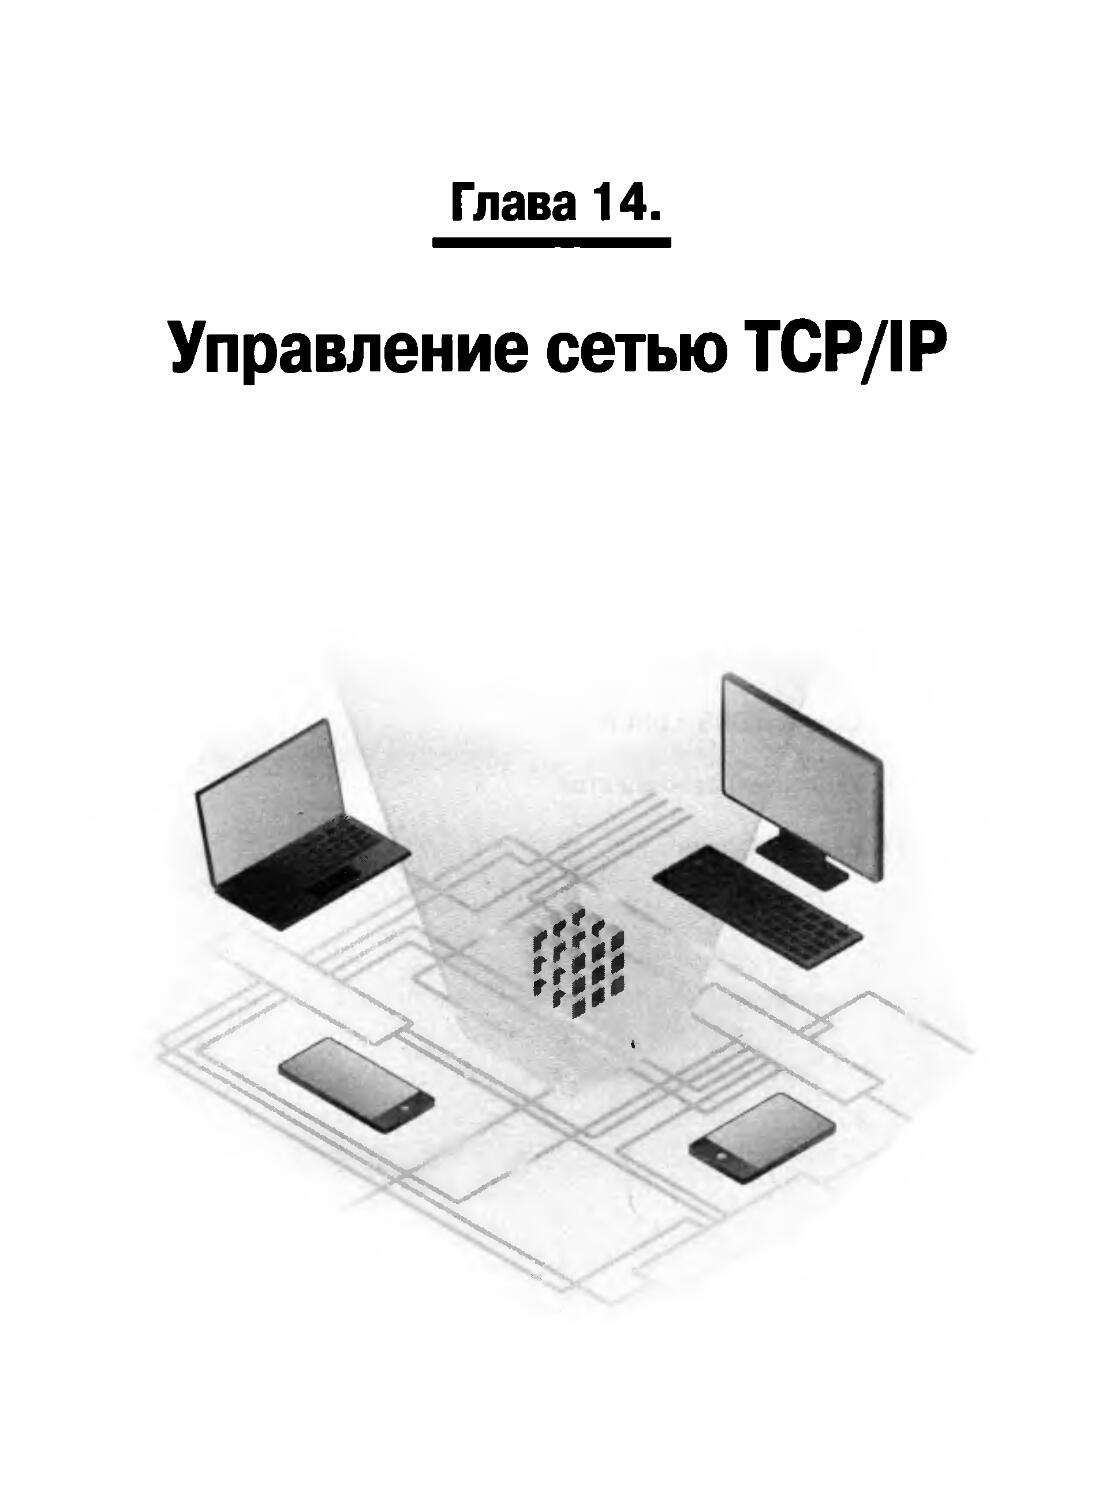 ГЛАВА 14. УПРАВЛЕНИЕ СЕТЬЮ TCP/IP